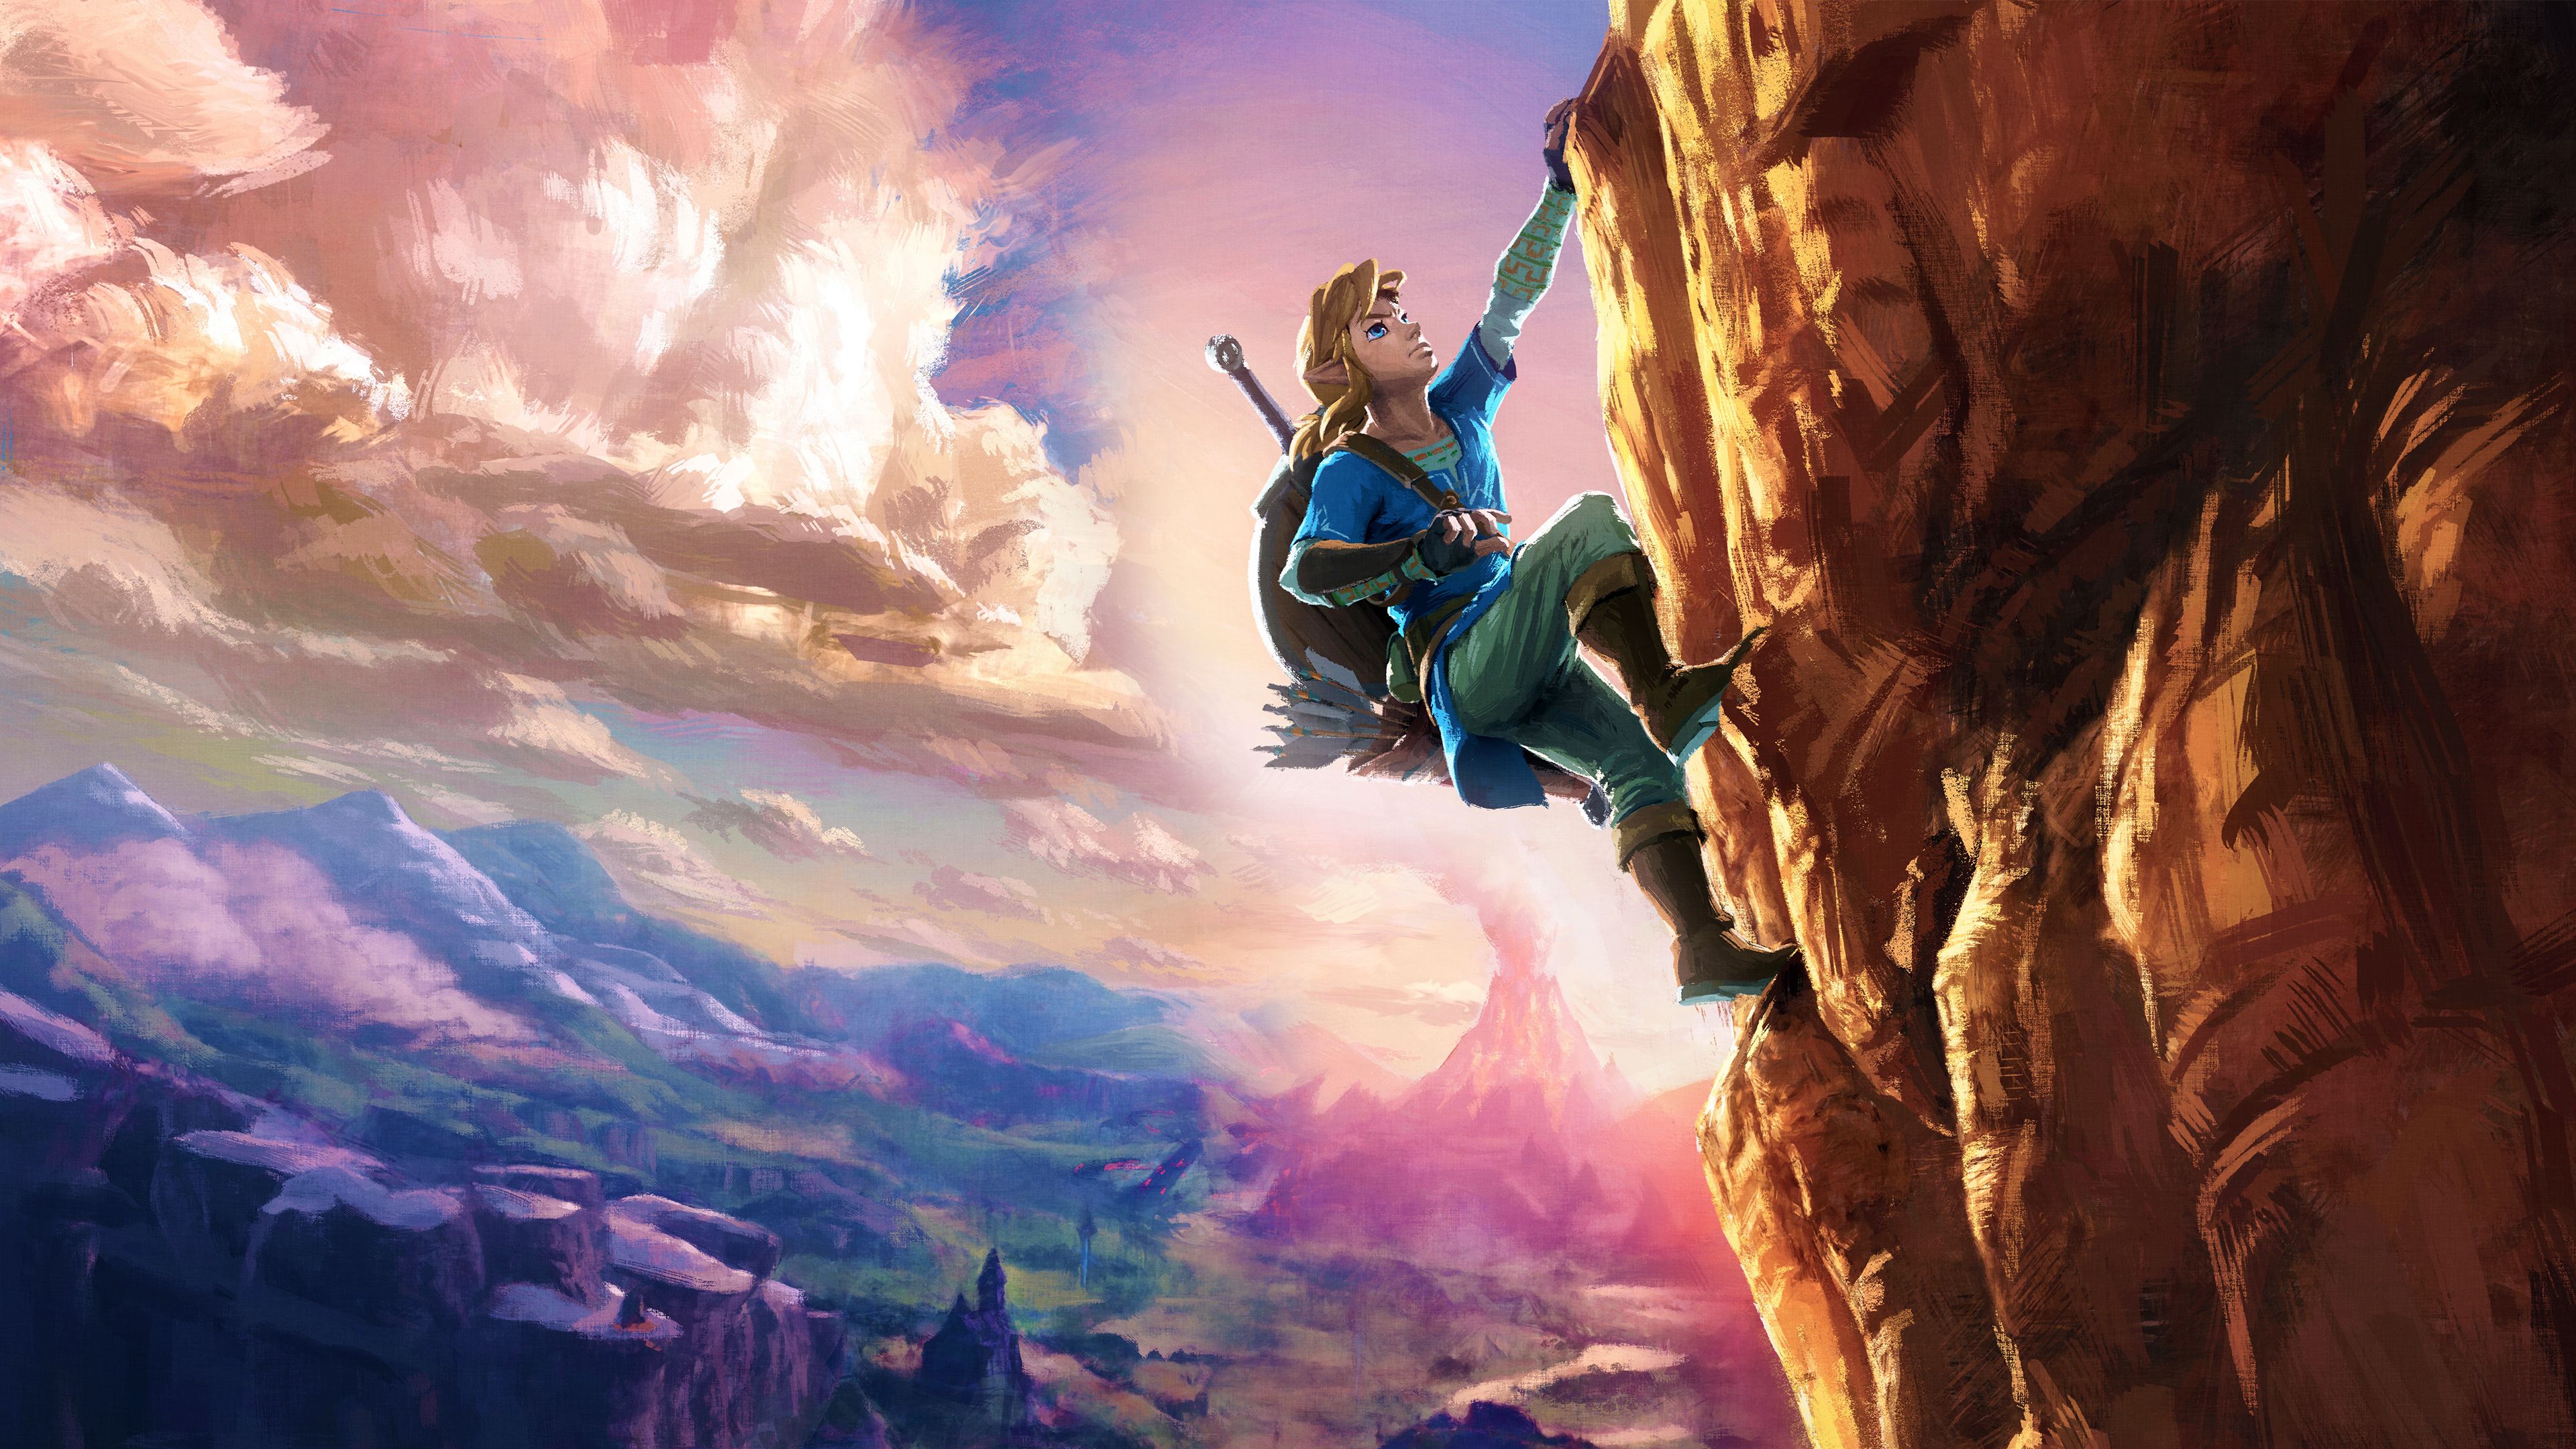 The Legend Of Zelda Wallpapers Wallpaper Cave - Bank2home.com